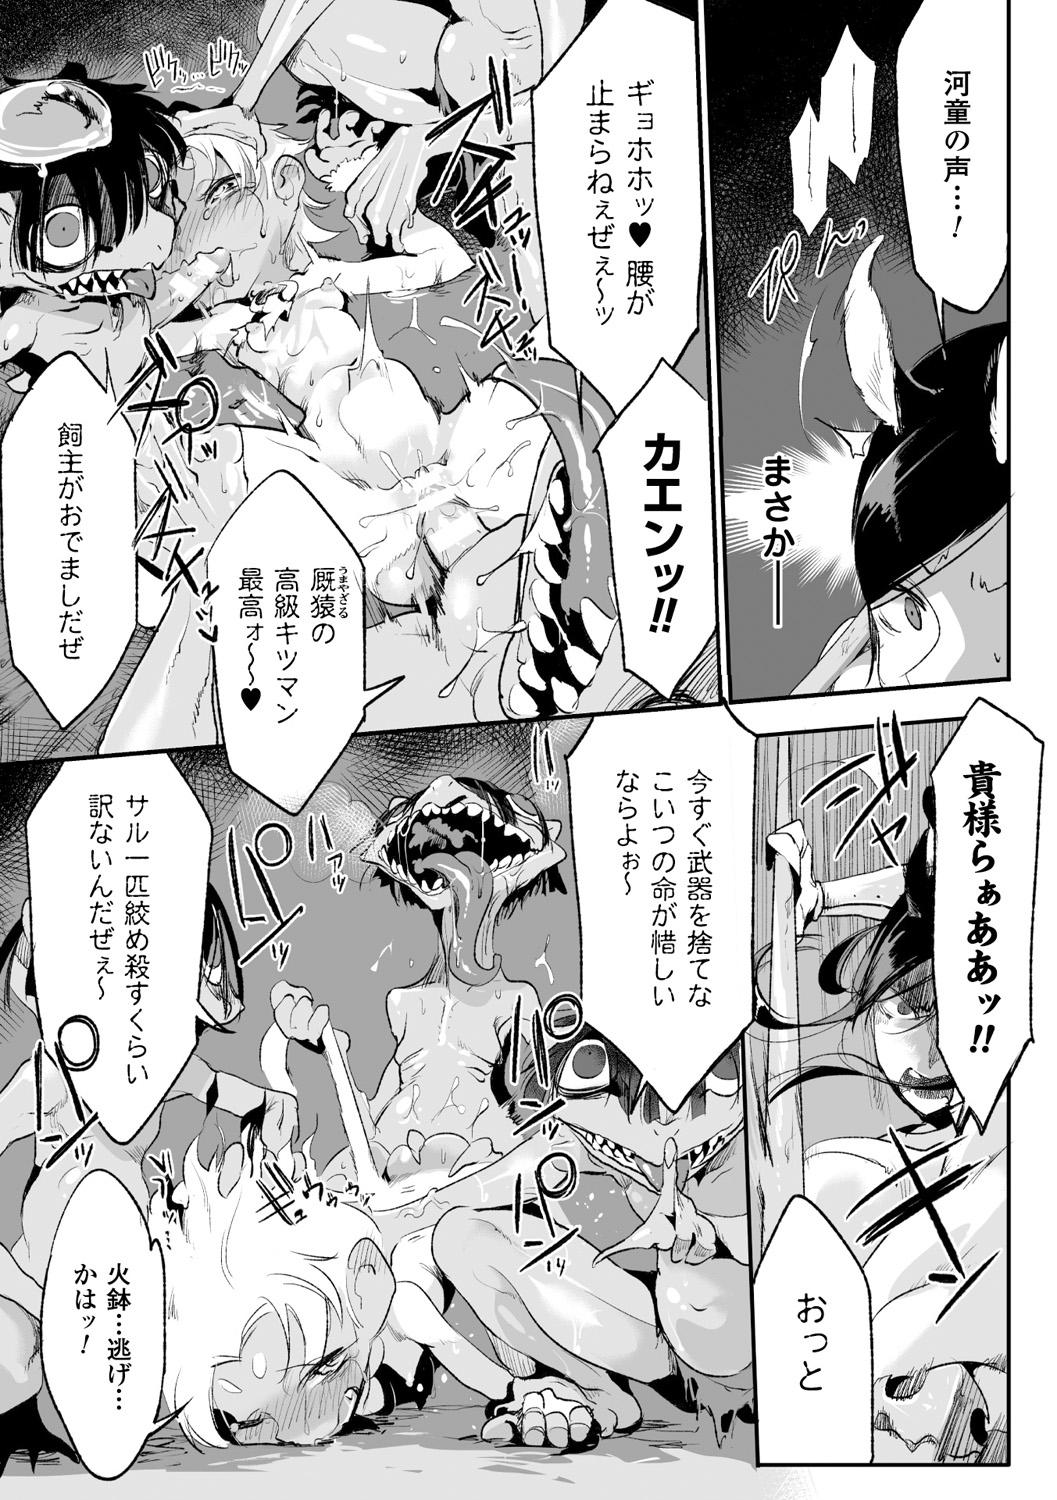 Bessatsu Comic Unreal Monster Musume Paradise Digital Ban Vol. 7 72